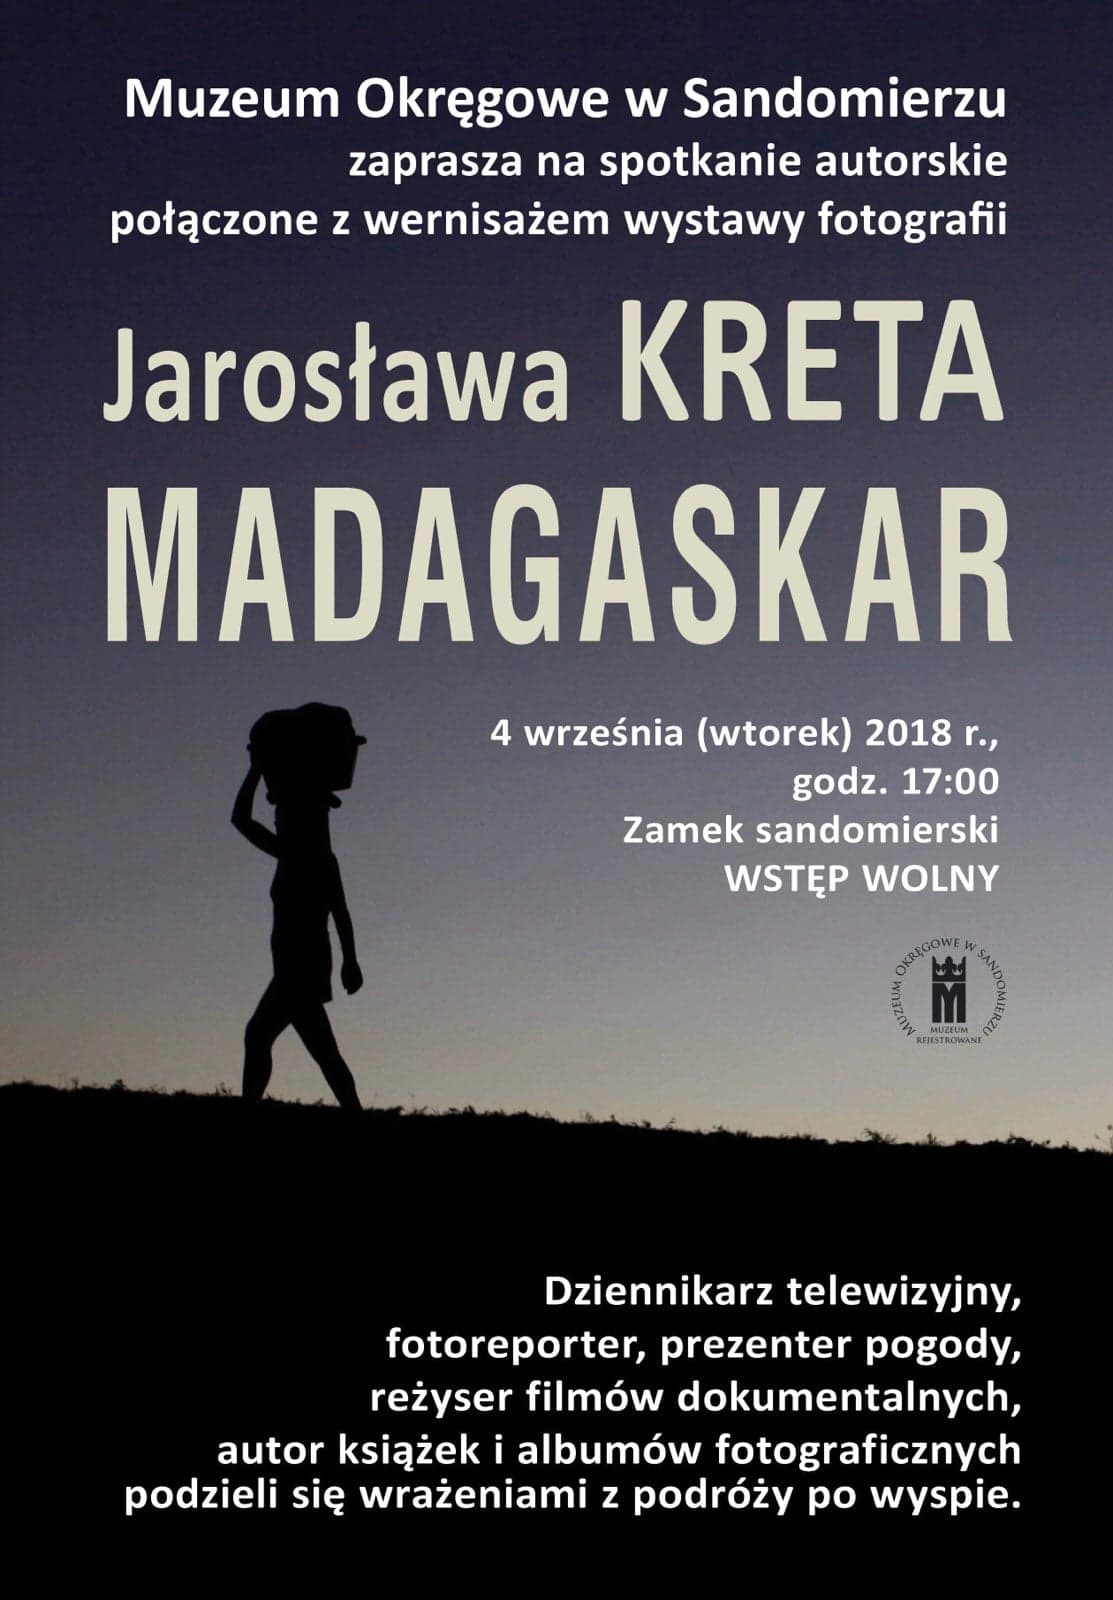 Spotkanie autorskie oraz wernisaż wystawy fotografii Jarosława Kreta - Madagaskar